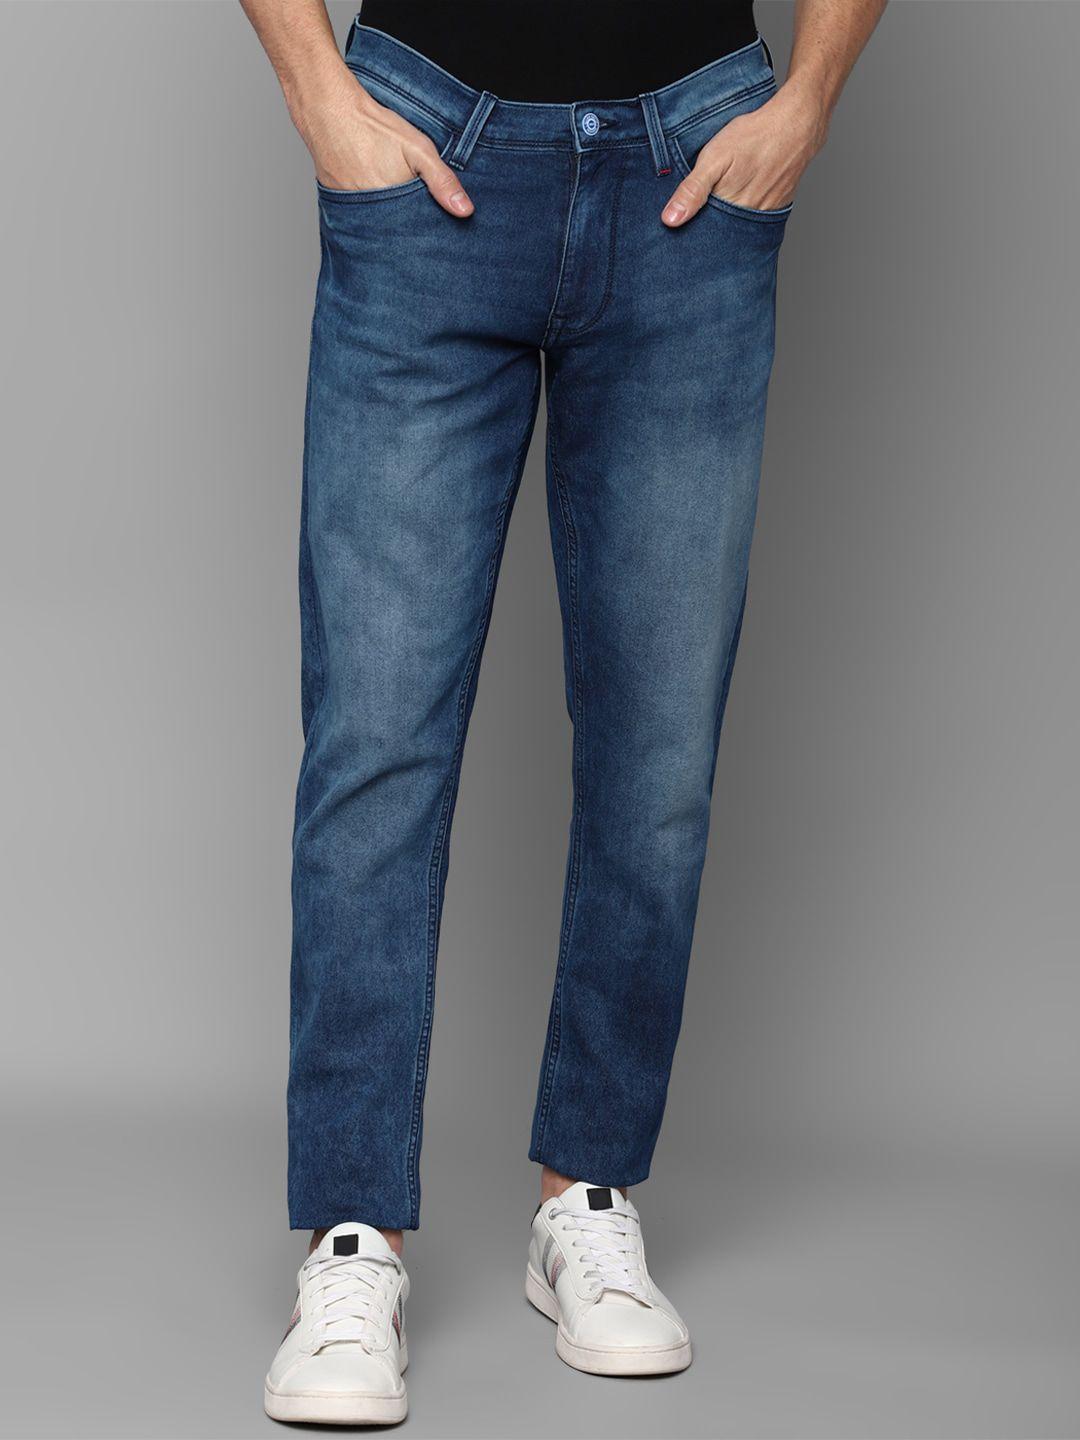 allen-solly-men-blue-slim-fit-heavy-fade-jeans